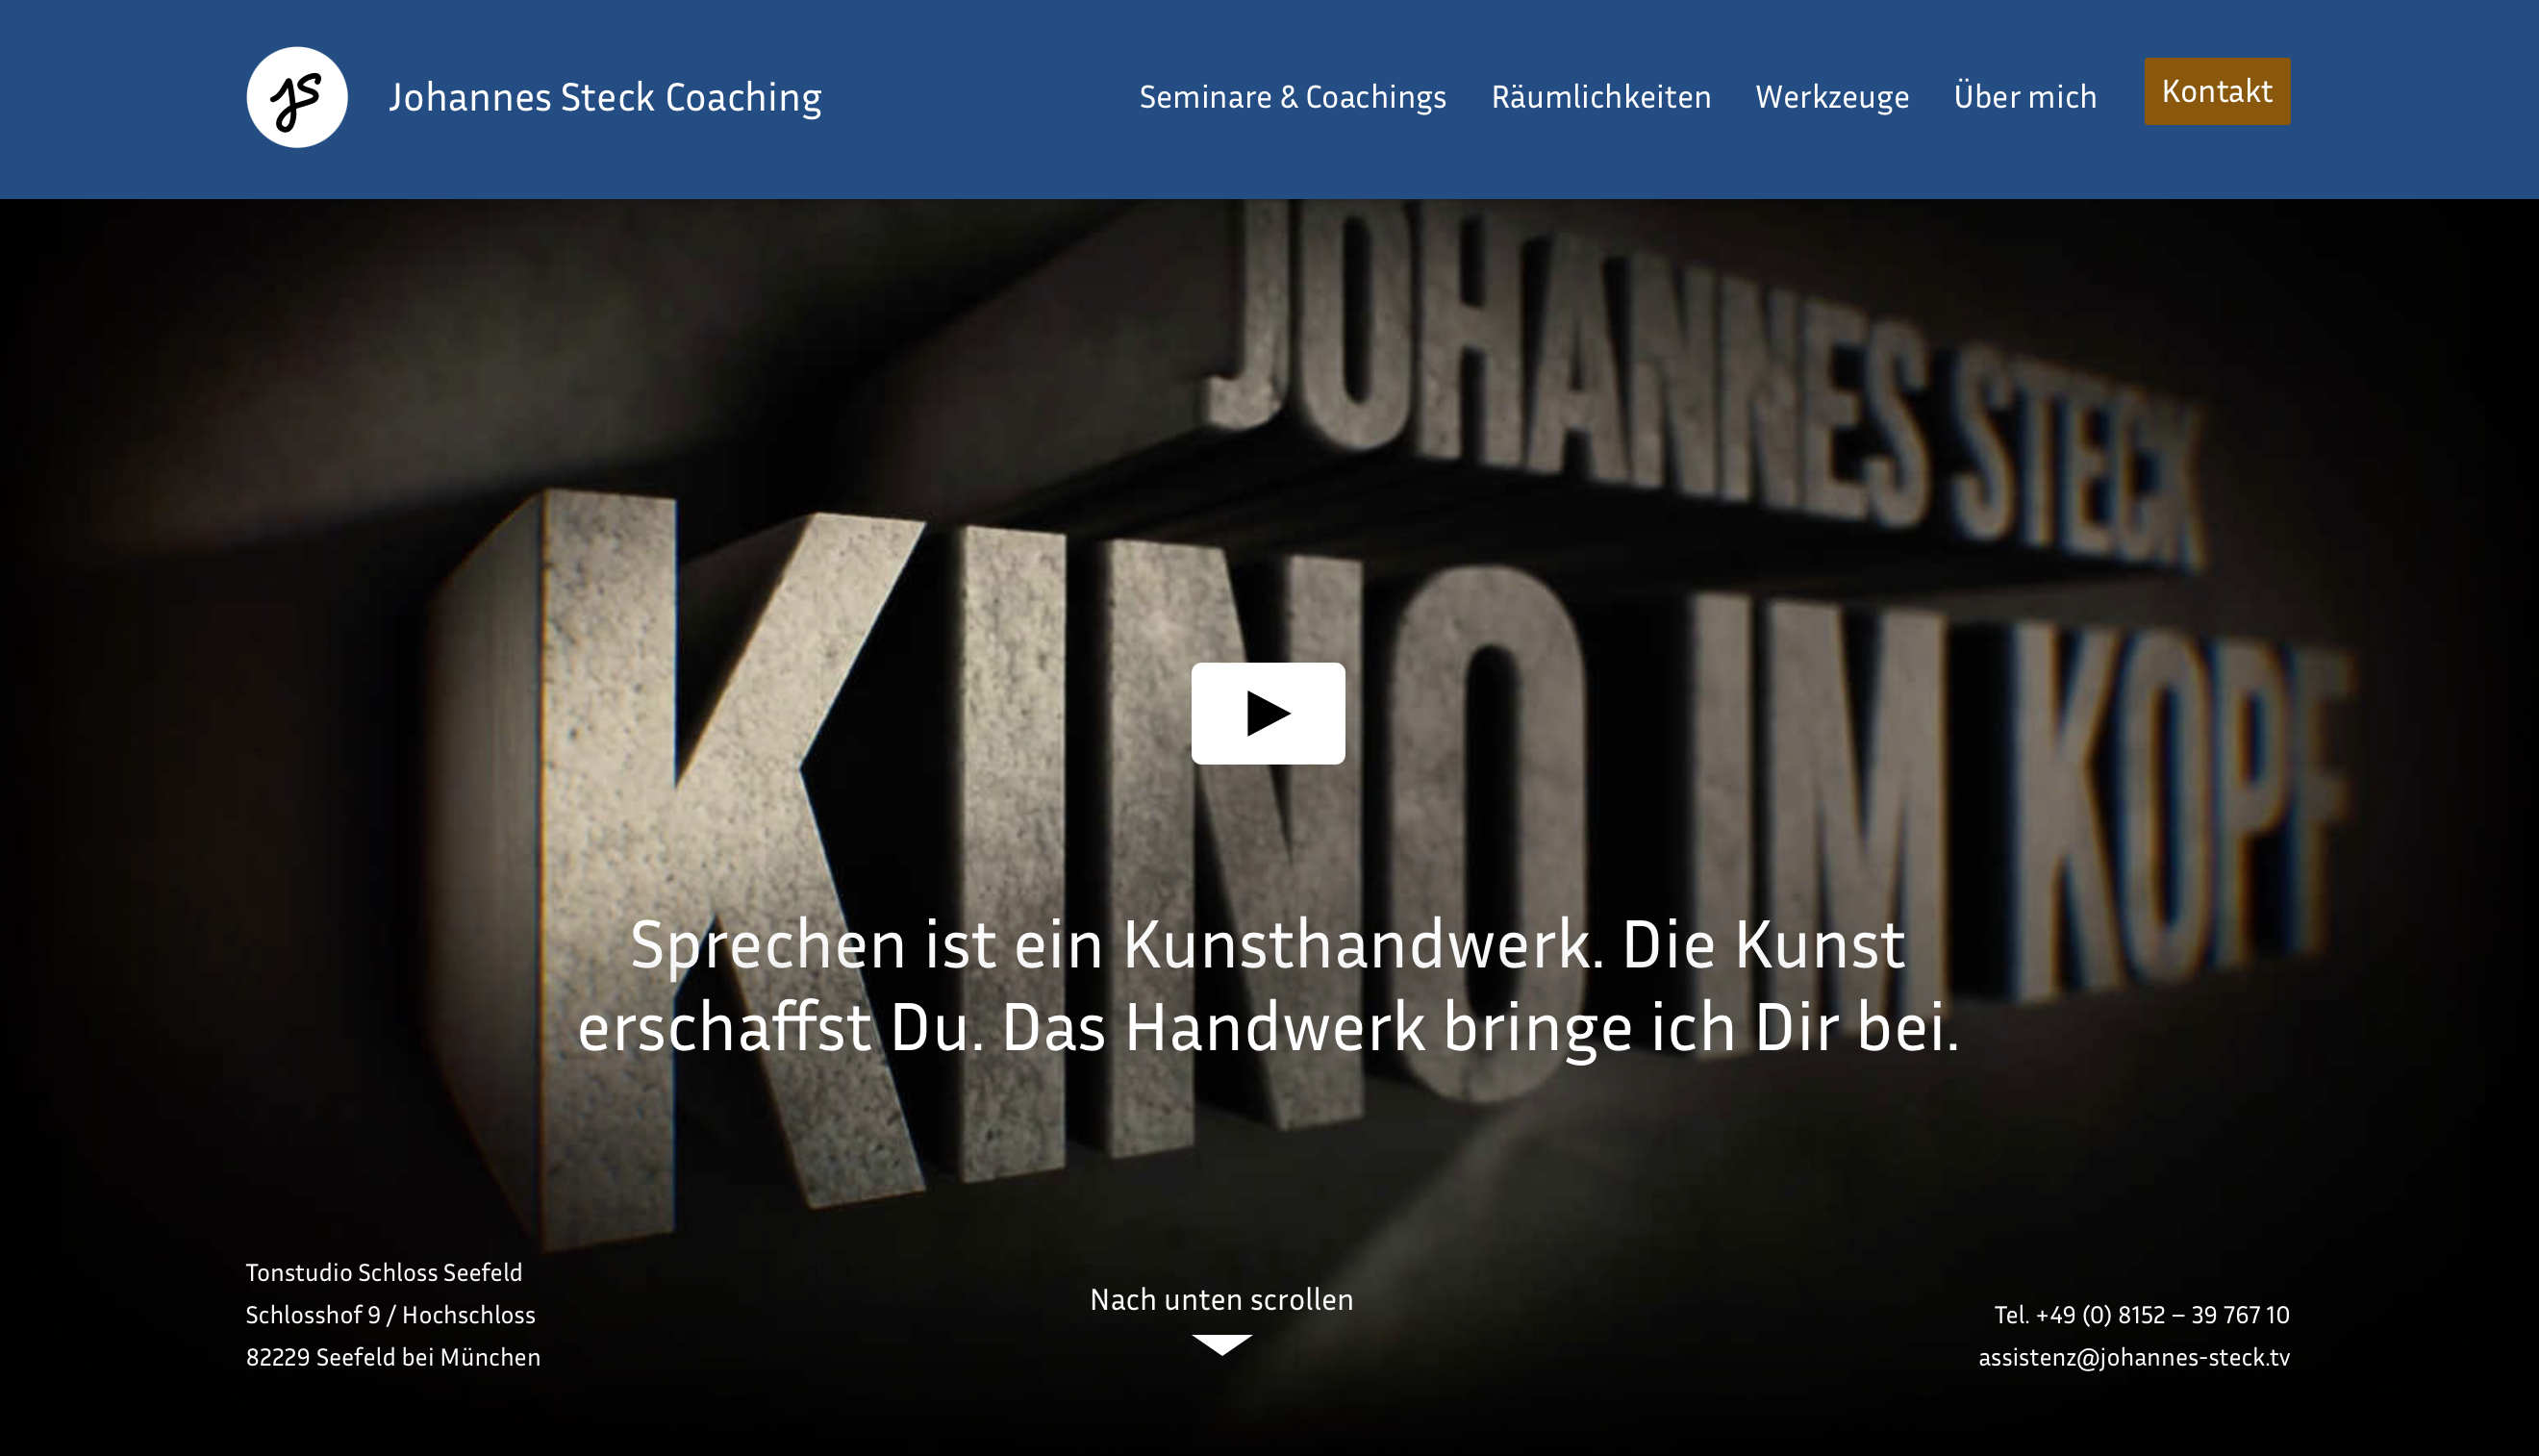 (c) Johannes-steck-coaching.de